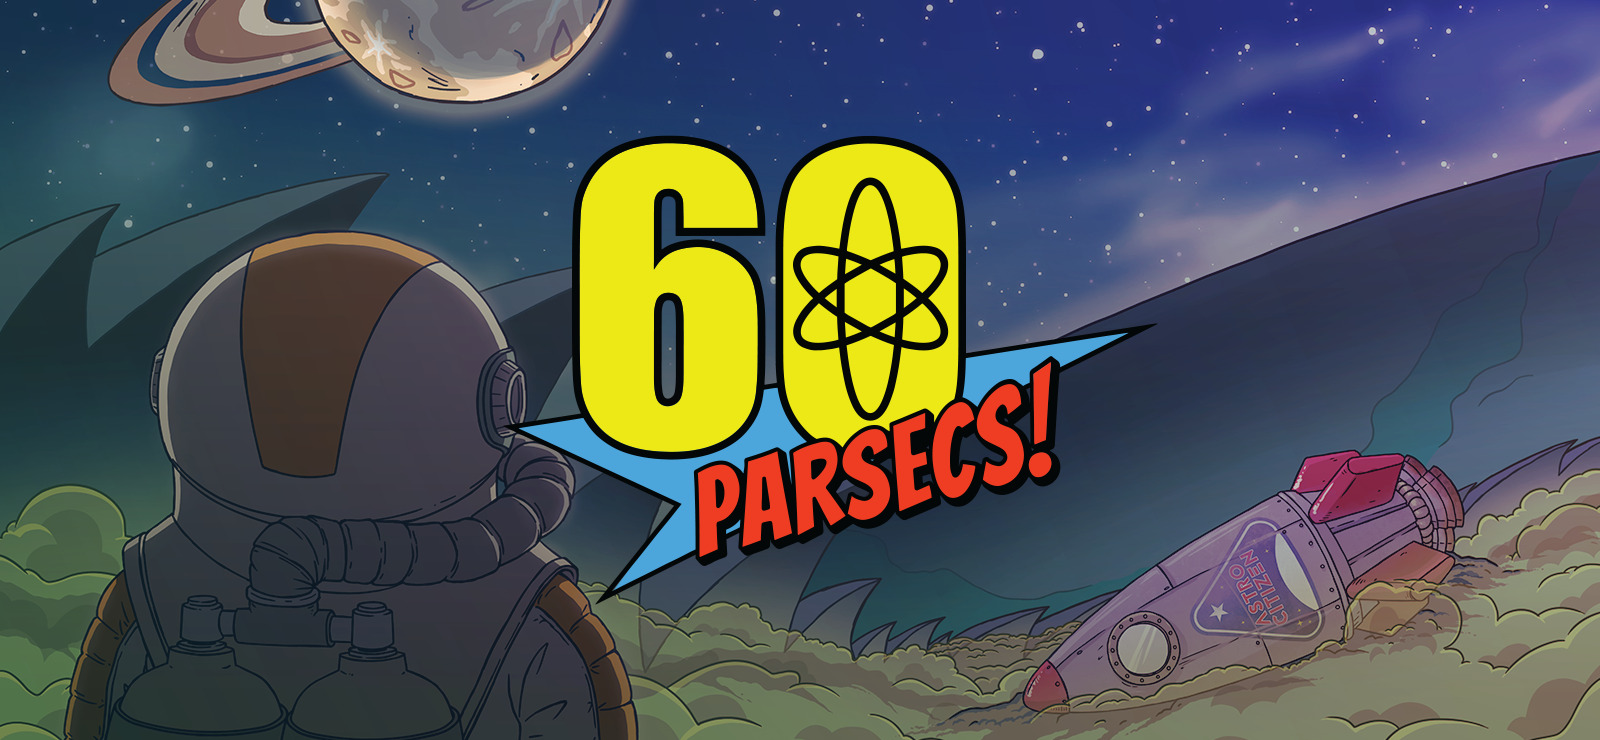 60 parsecs download